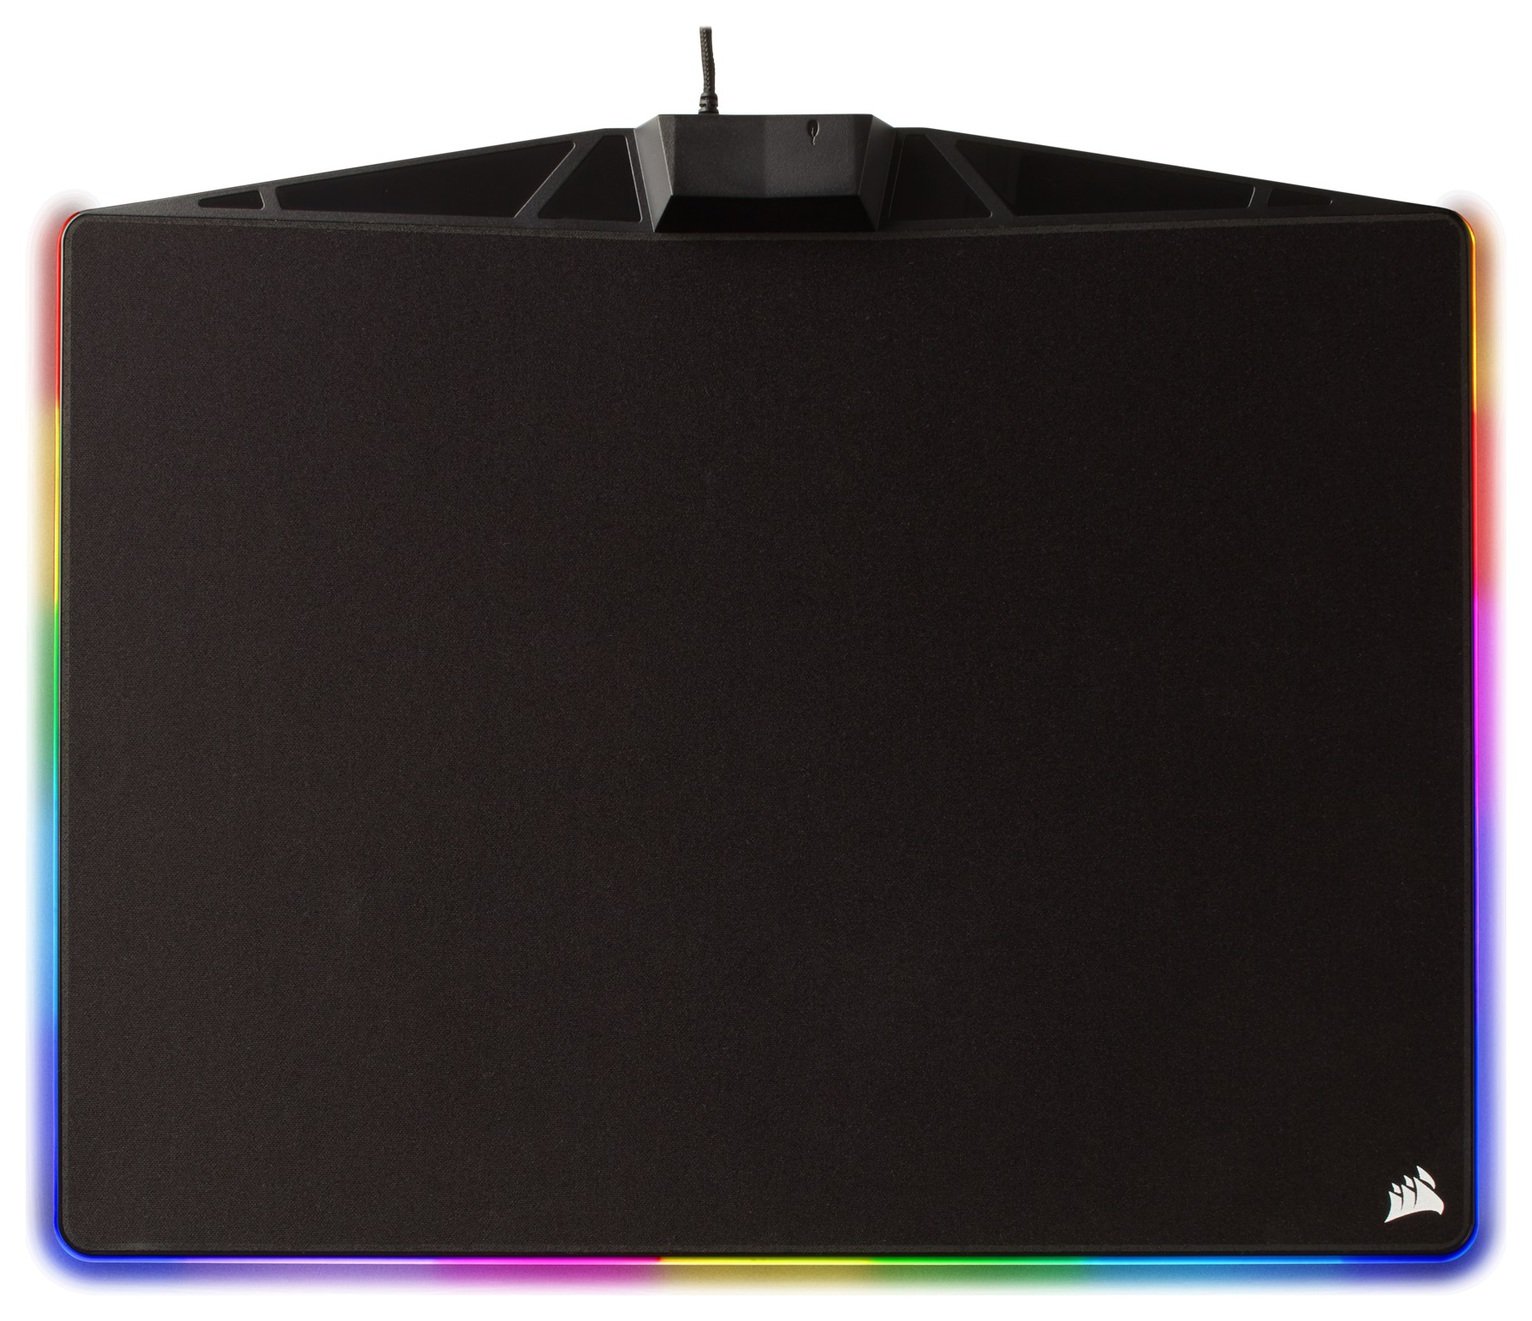 Corsair MM800C RGB Polaris Mouse Pad review